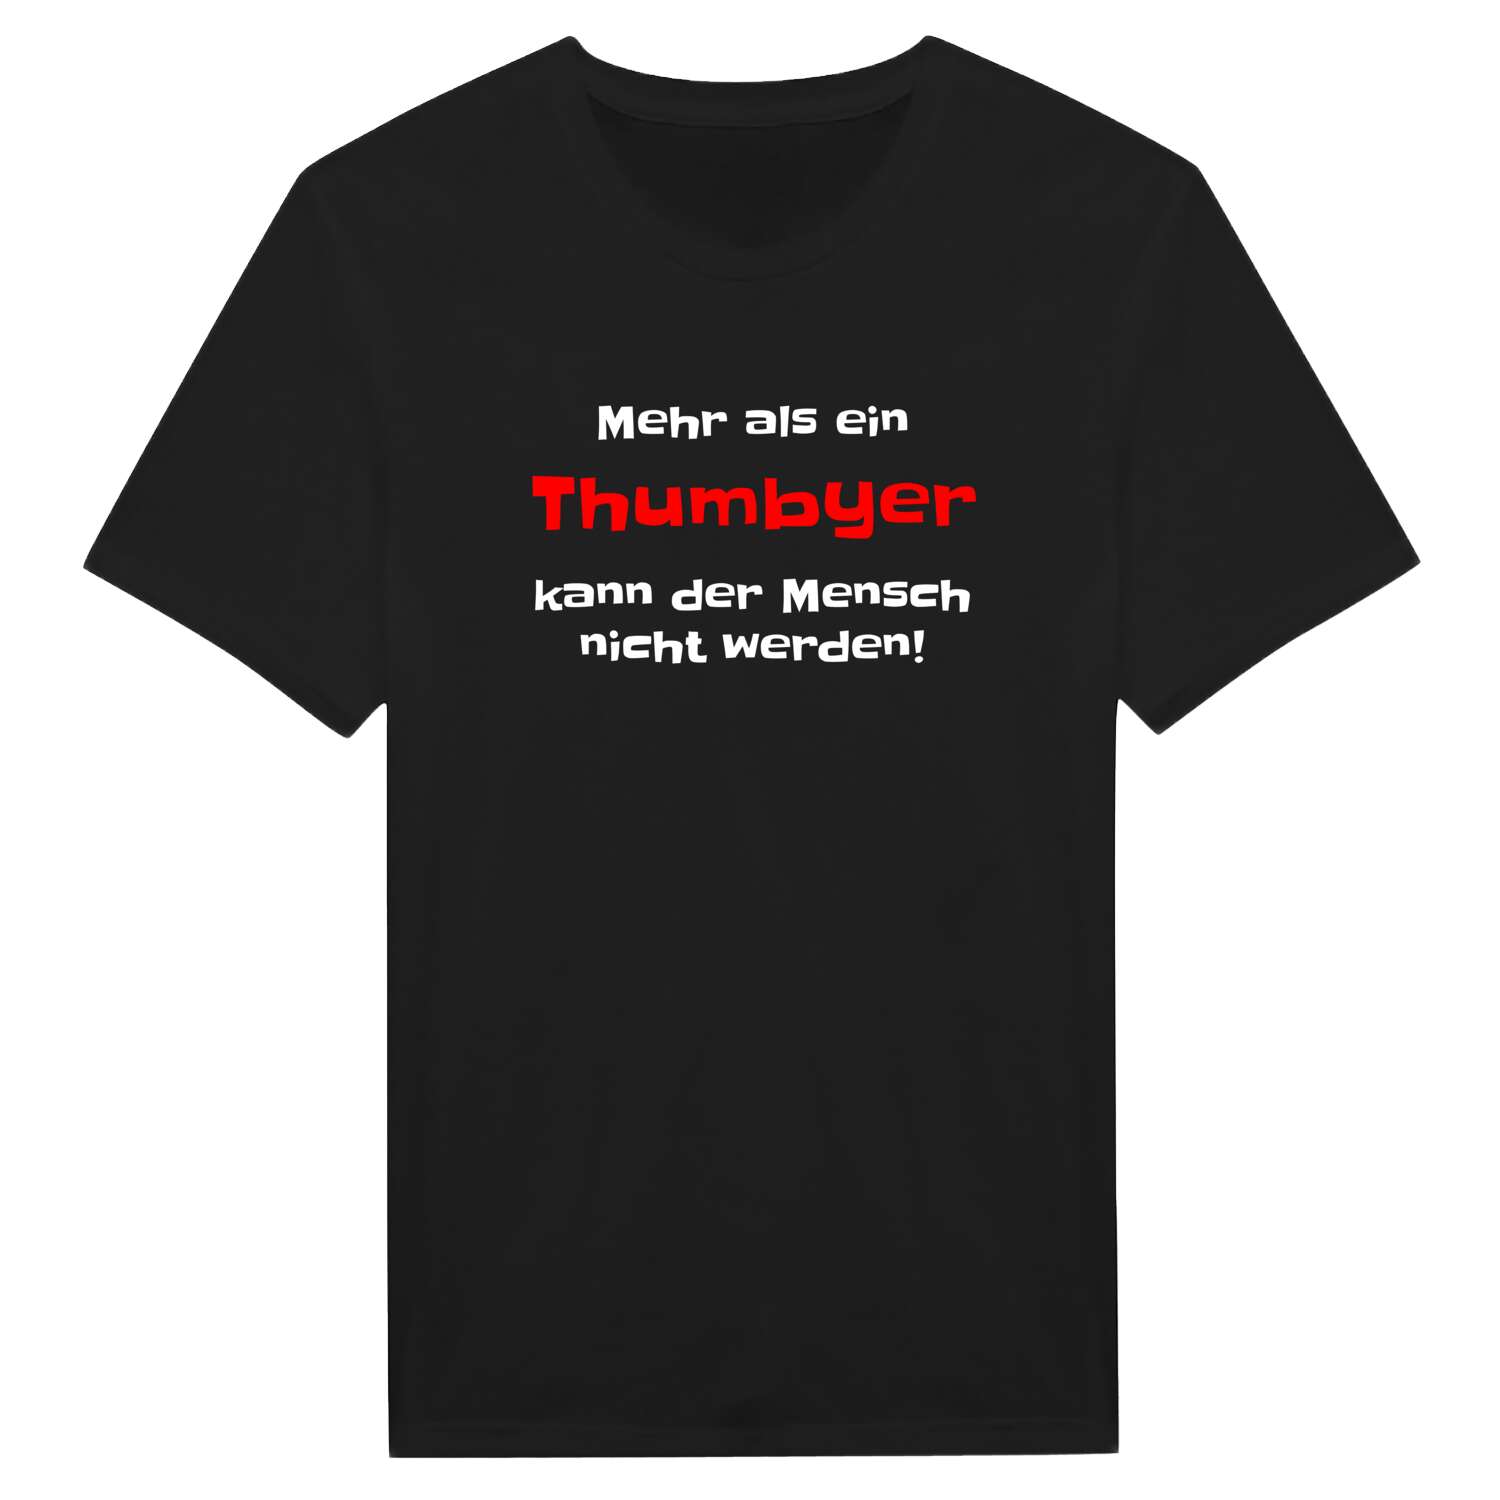 Thumby T-Shirt »Mehr als ein«